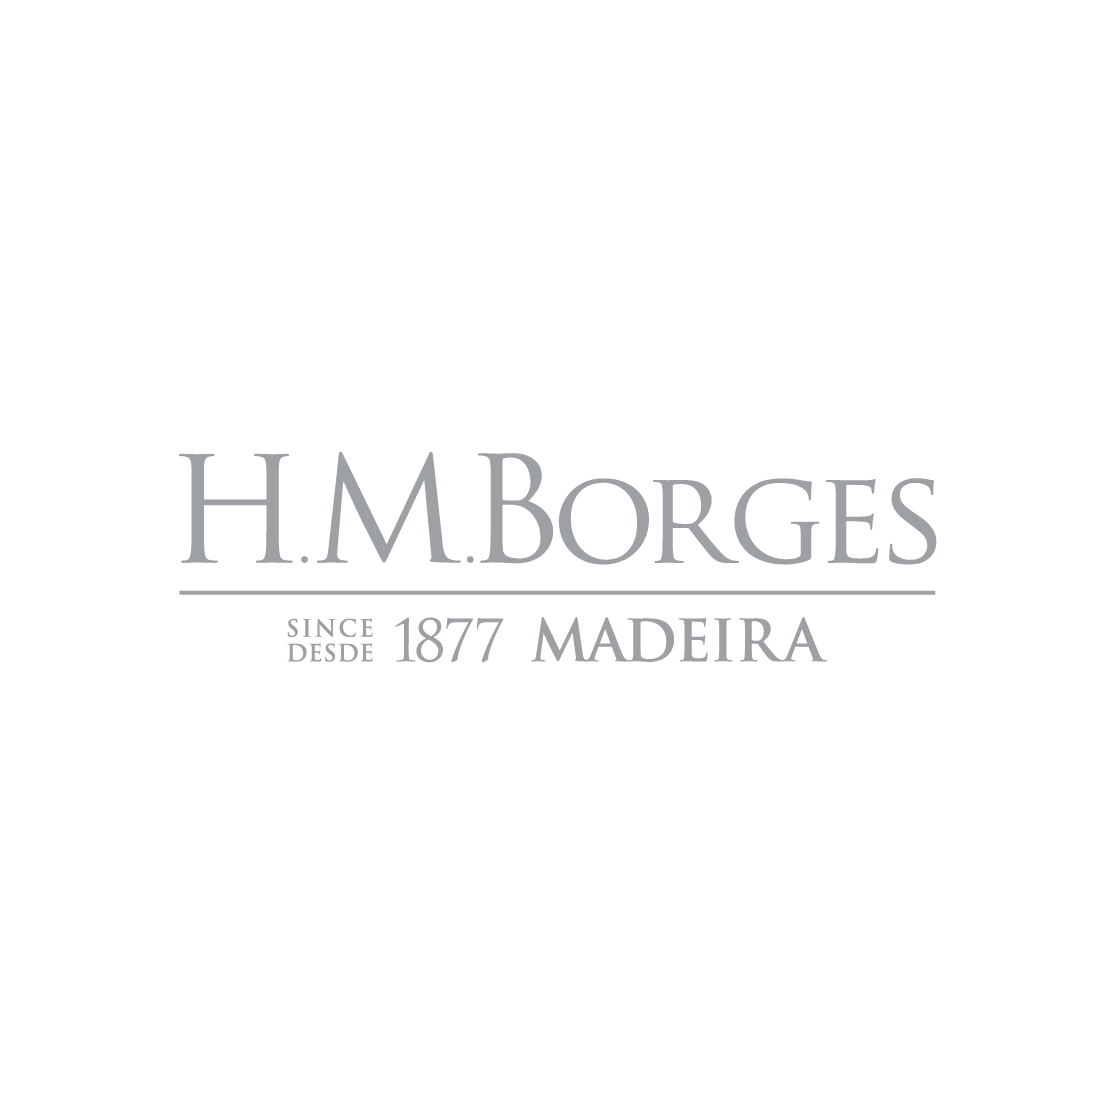 H. M. Borges